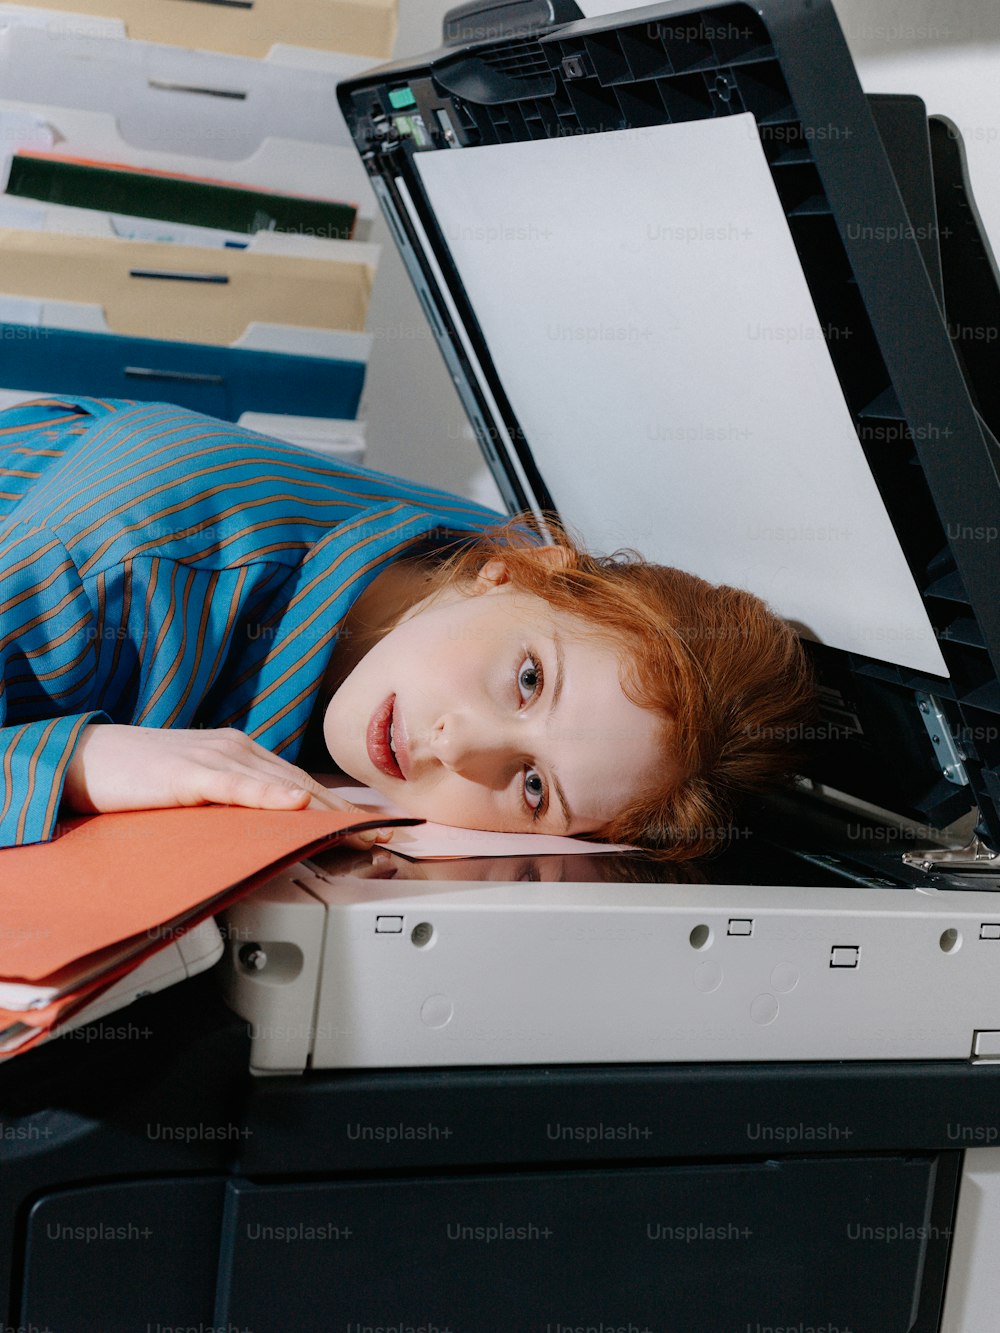 열린 노트북 컴퓨터 위에 누워 있는 어린 소녀